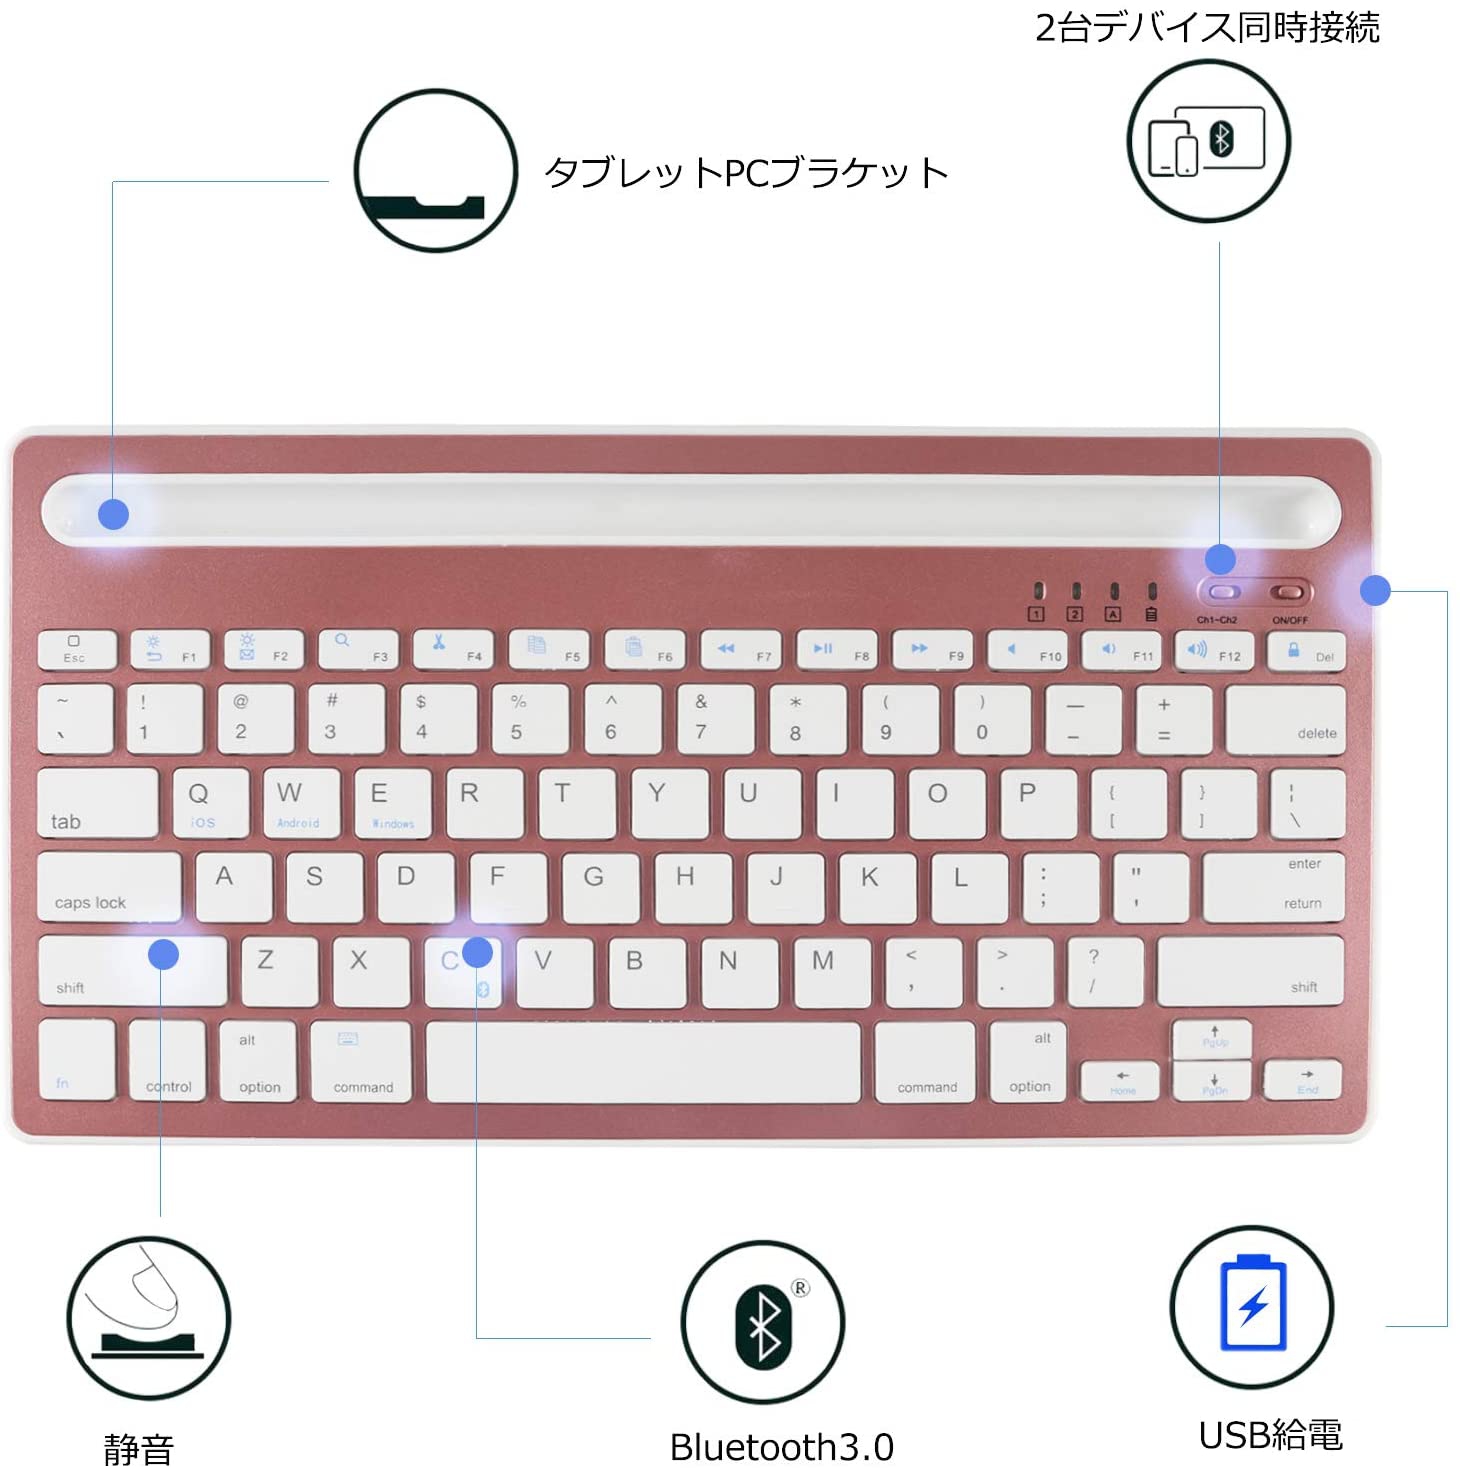 COOLAY(クーレイ) マルチペアリング Bluetoothキーボードの商品画像3 